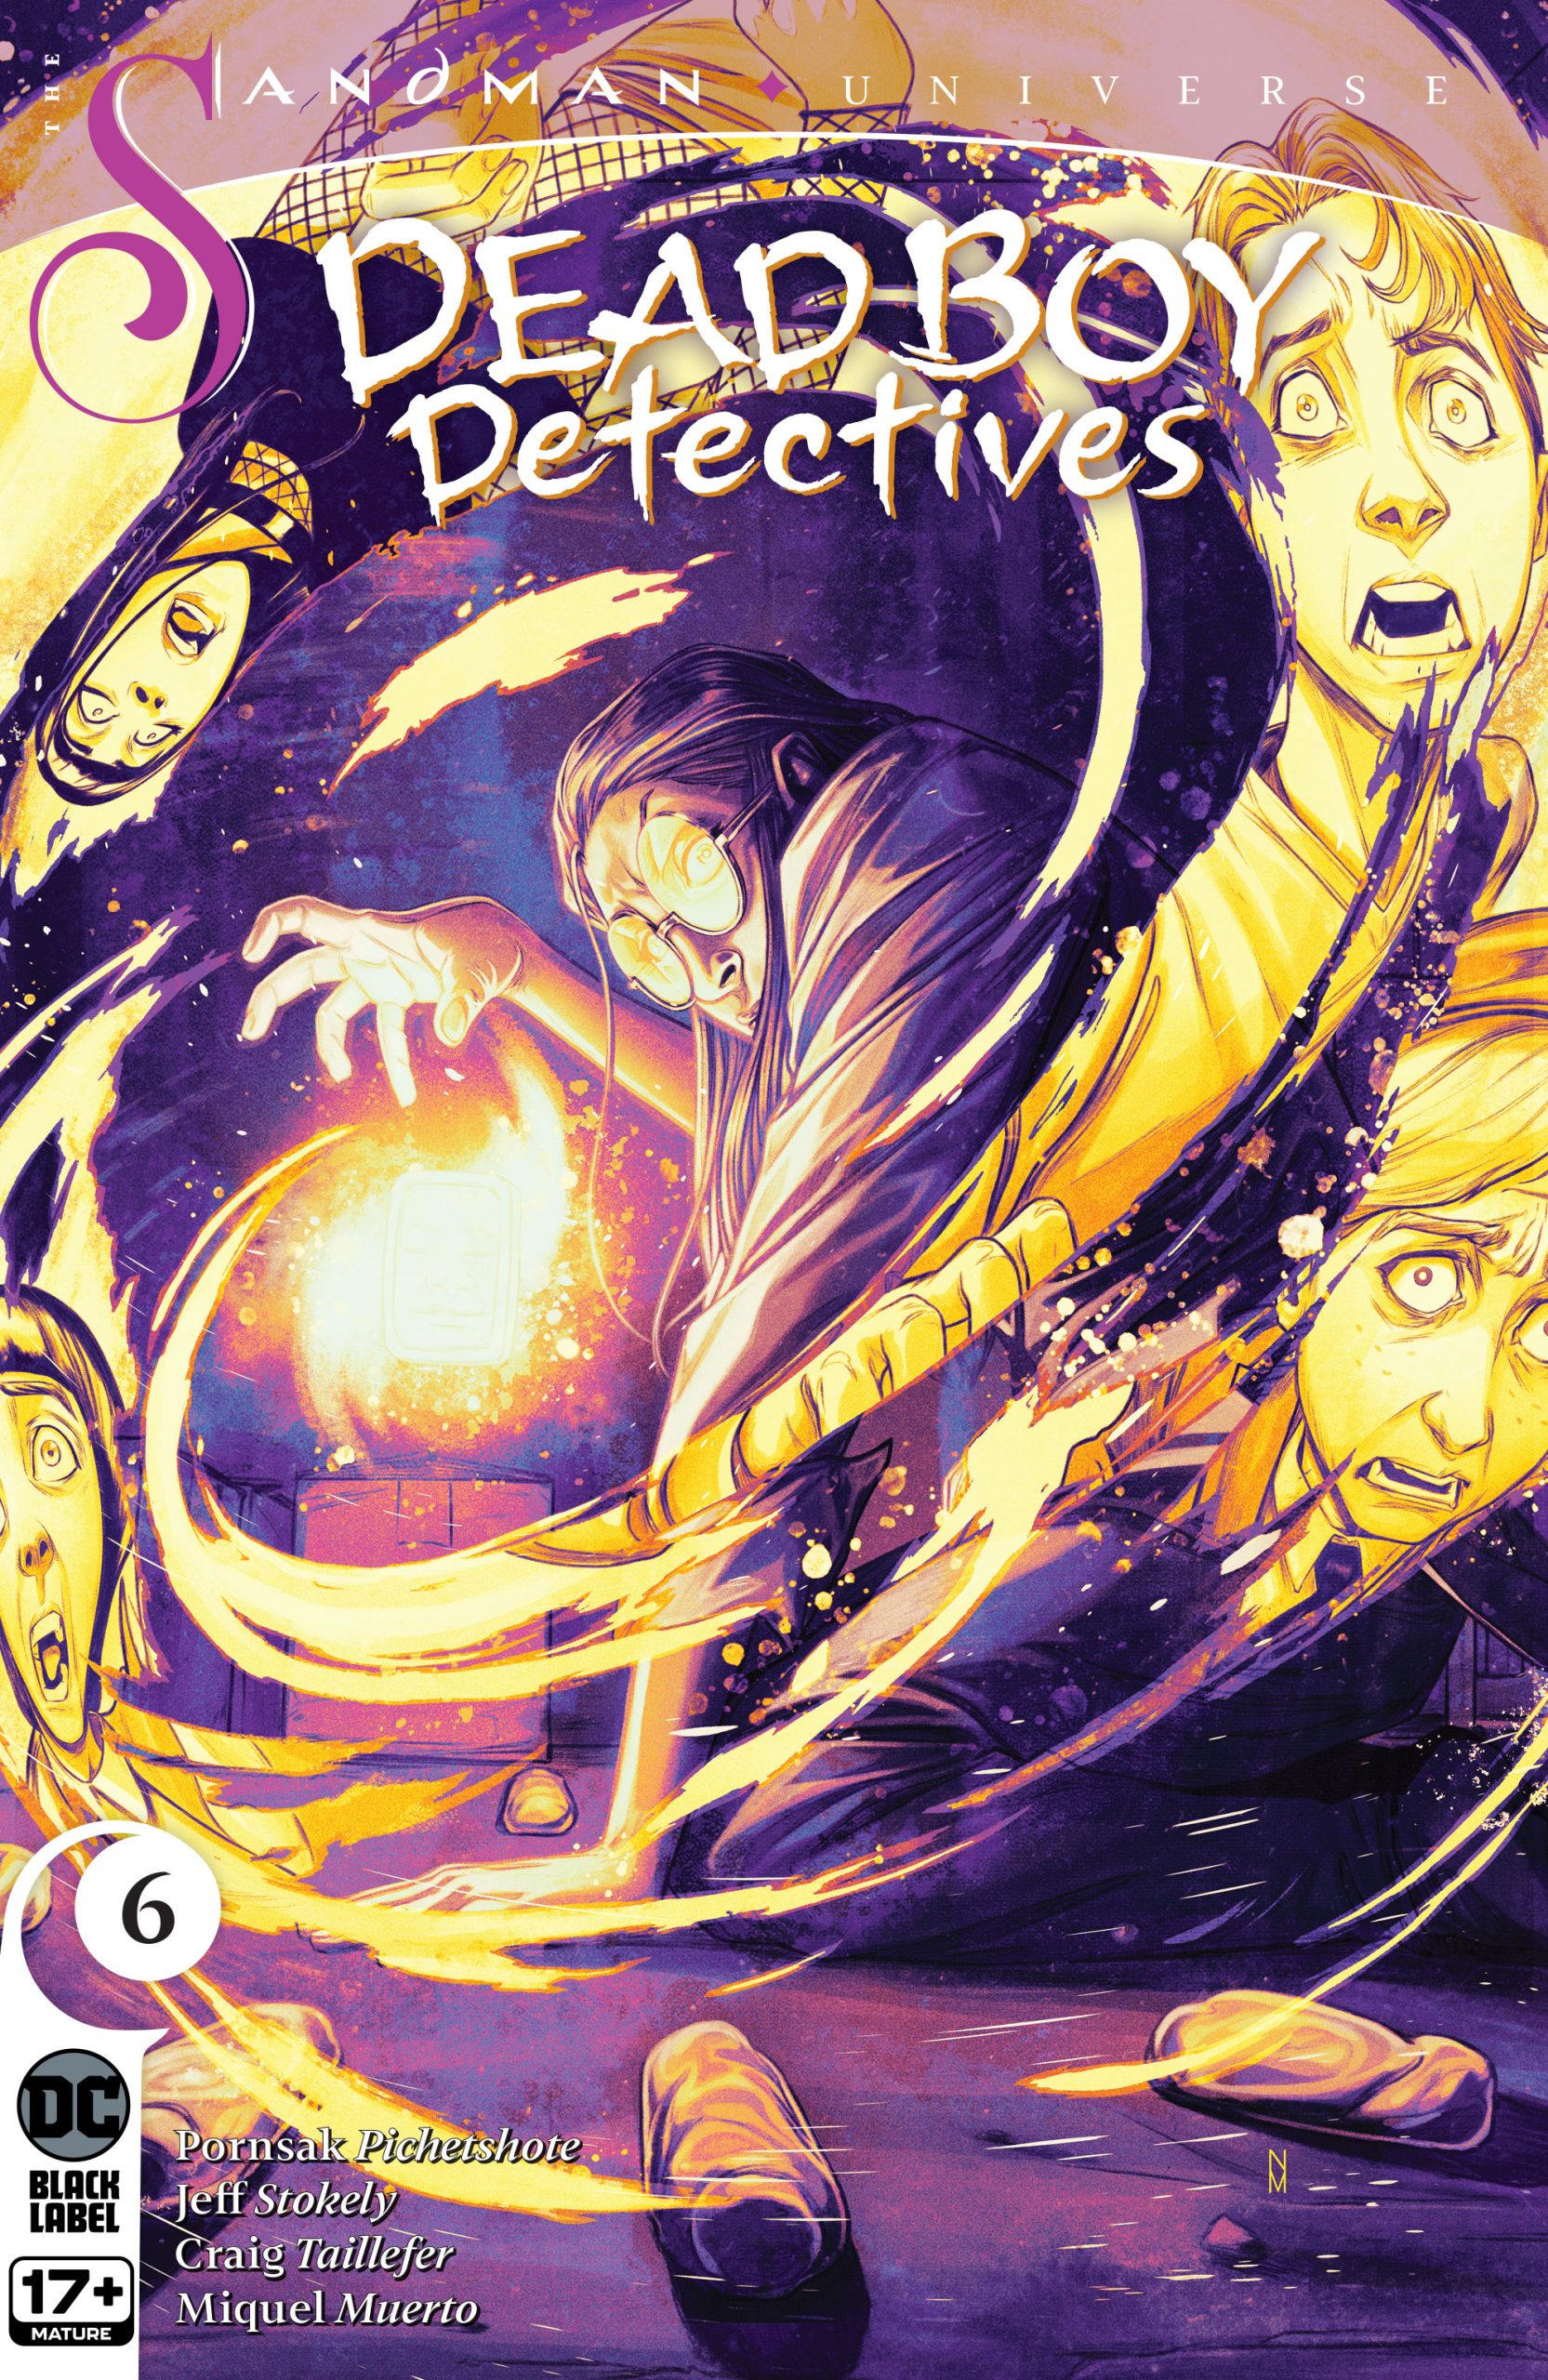 Review Sandman Universe Dead Boy Detectives #6